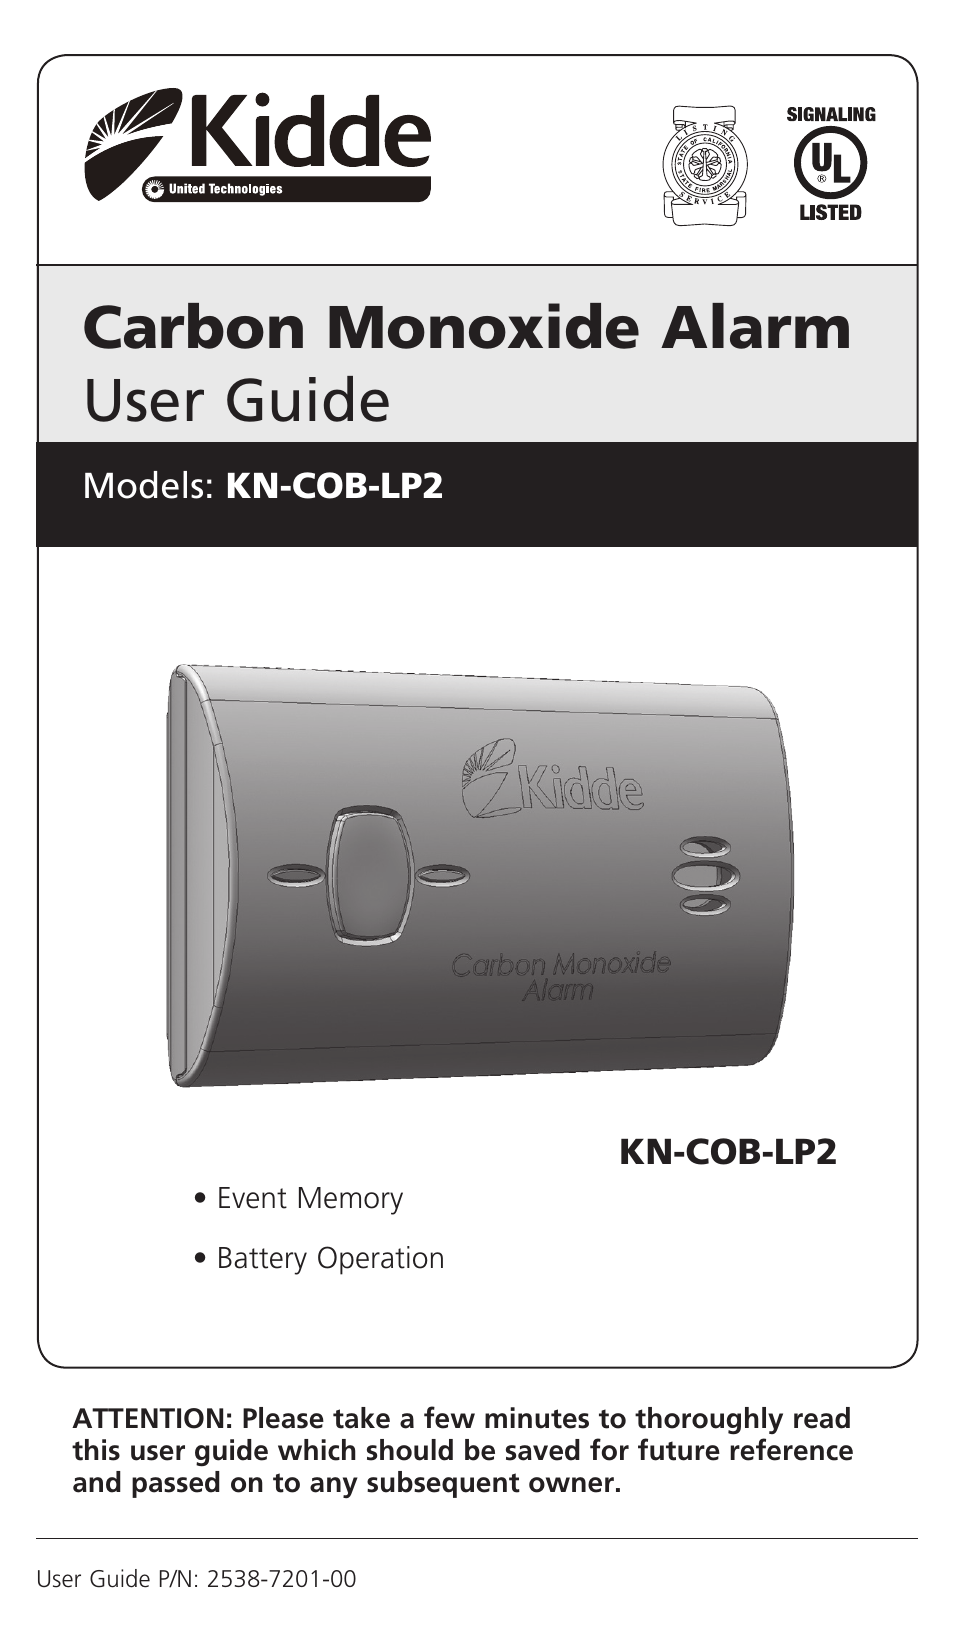 Kidde Kn-cob-lcb-a User Manual